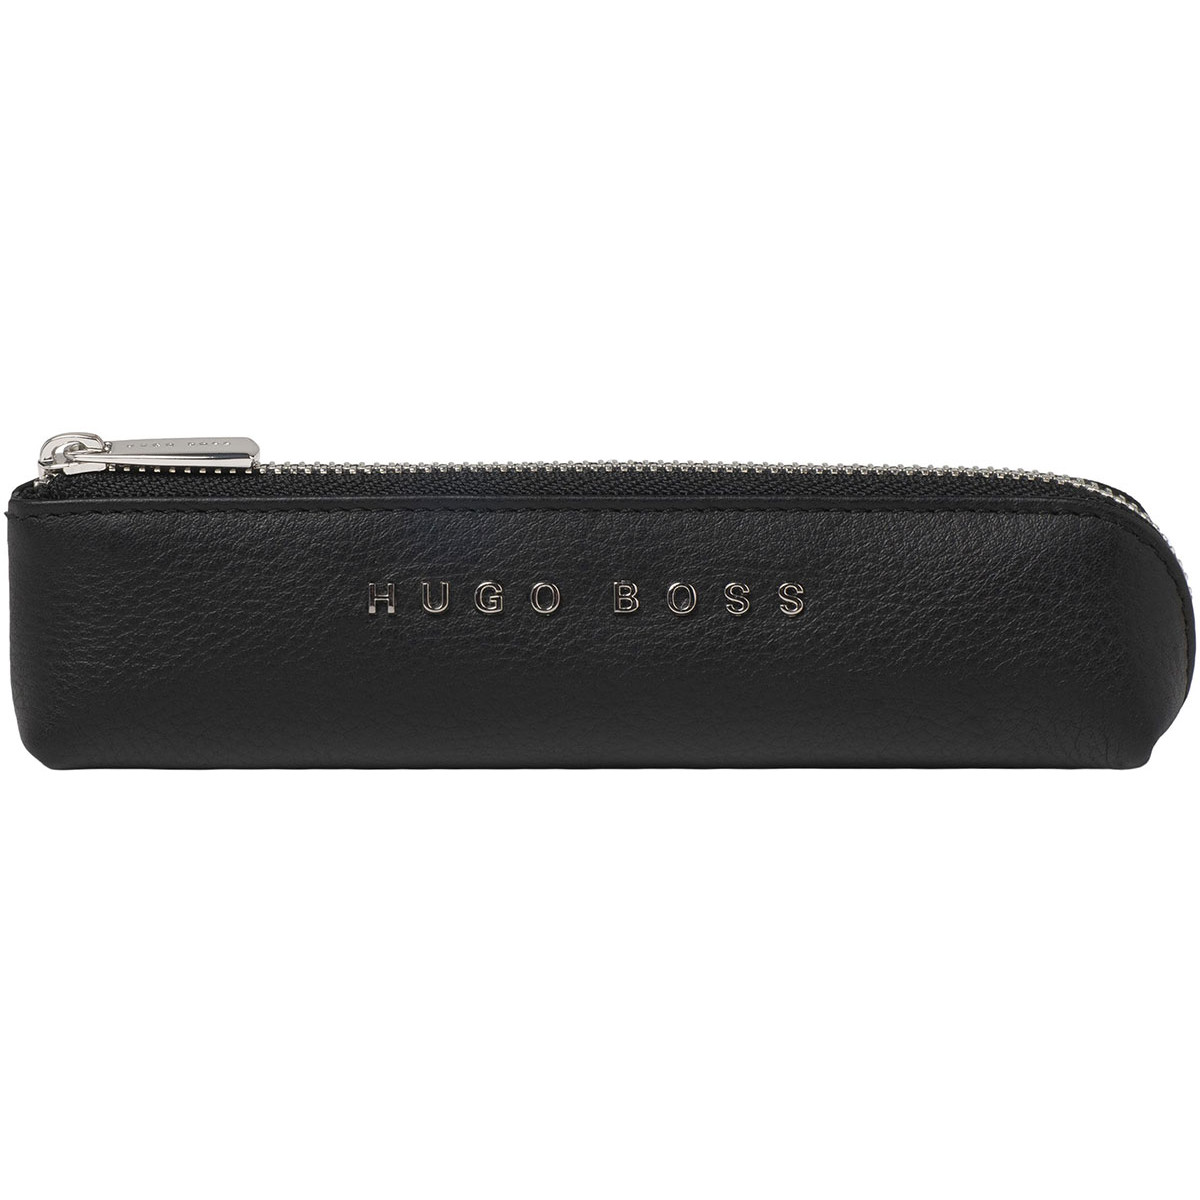 Hugo Boss Storyline Pen Case - Single - Black | HLB909A | The Online ...